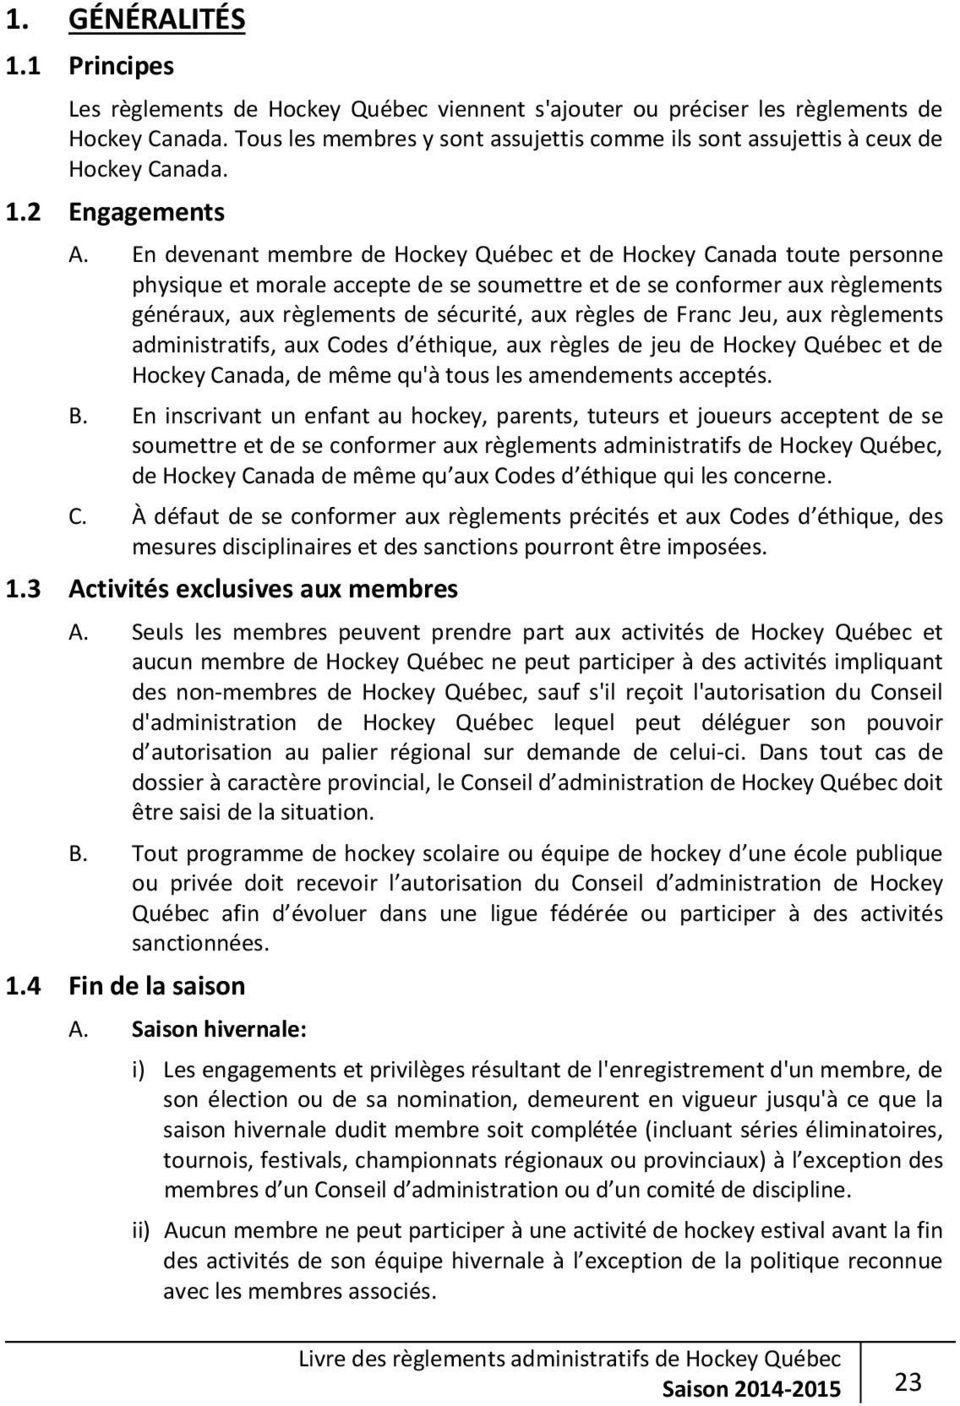 En devenant membre de Hockey Québec et de Hockey Canada toute personne physique et morale accepte de se soumettre et de se conformer aux règlements généraux, aux règlements de sécurité, aux règles de